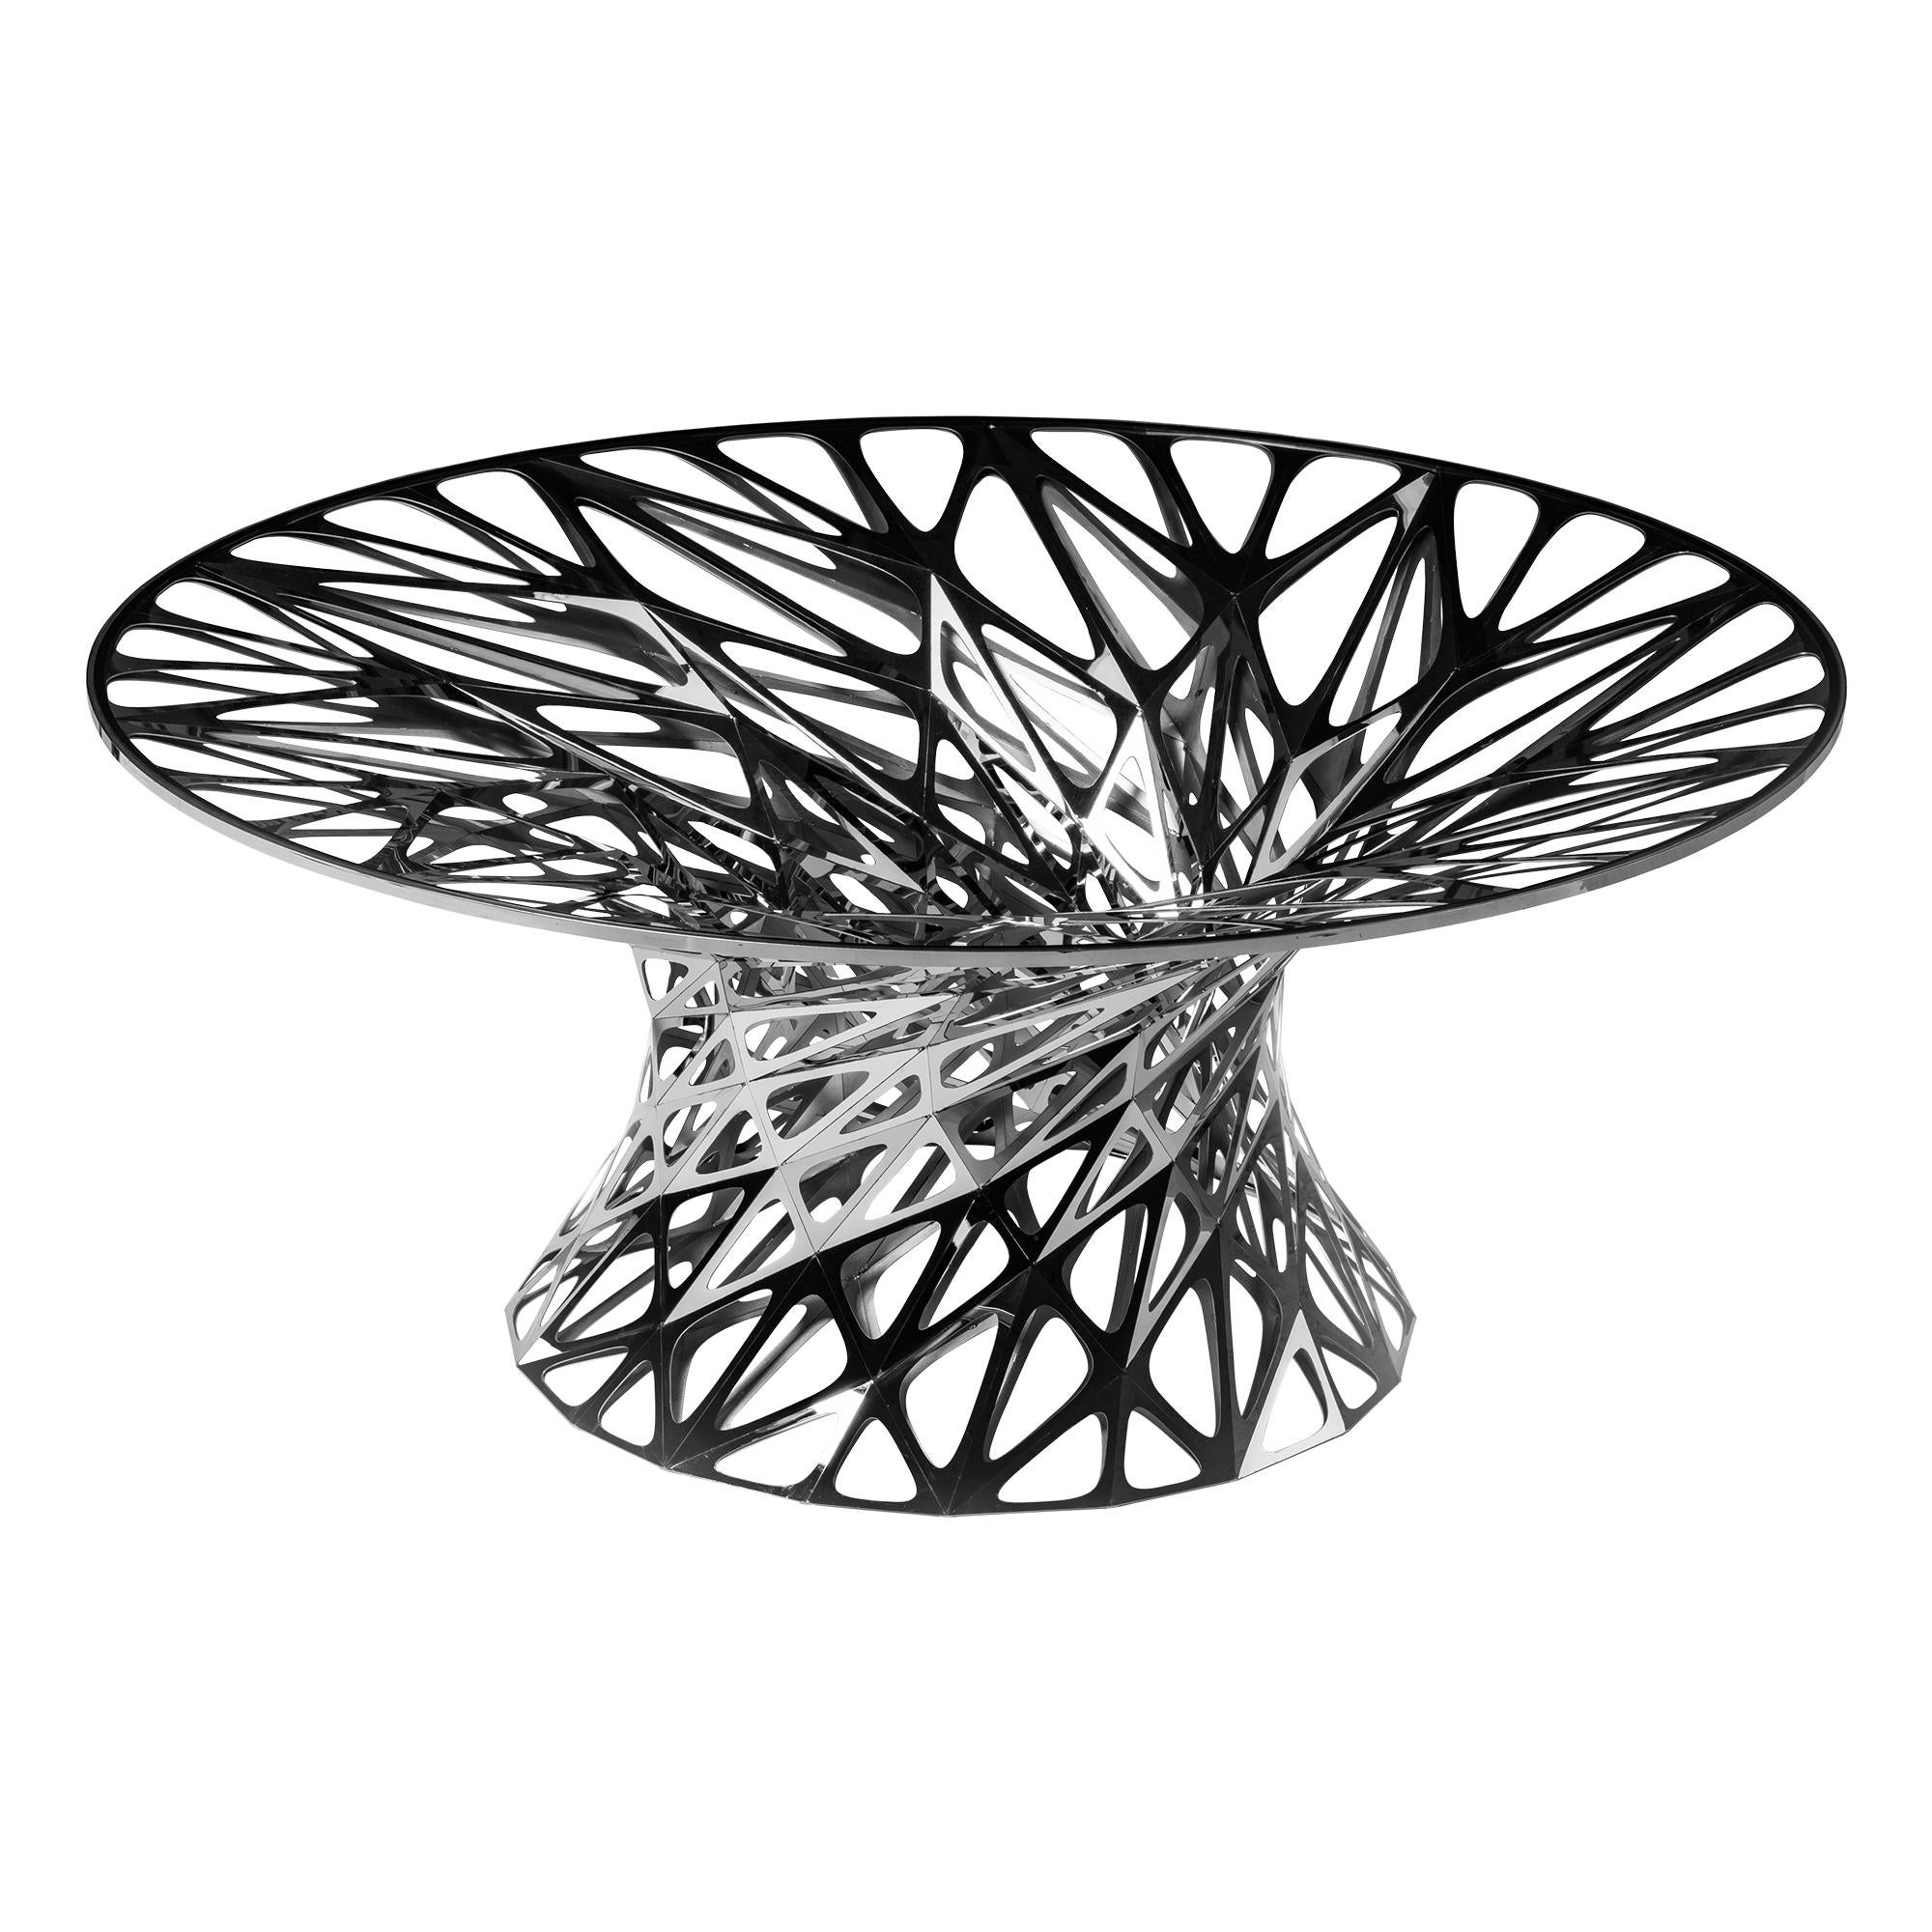 Objet n°MT-T1-F-L - Table en acier inoxydable poli miroir par Zhoujie Zhang